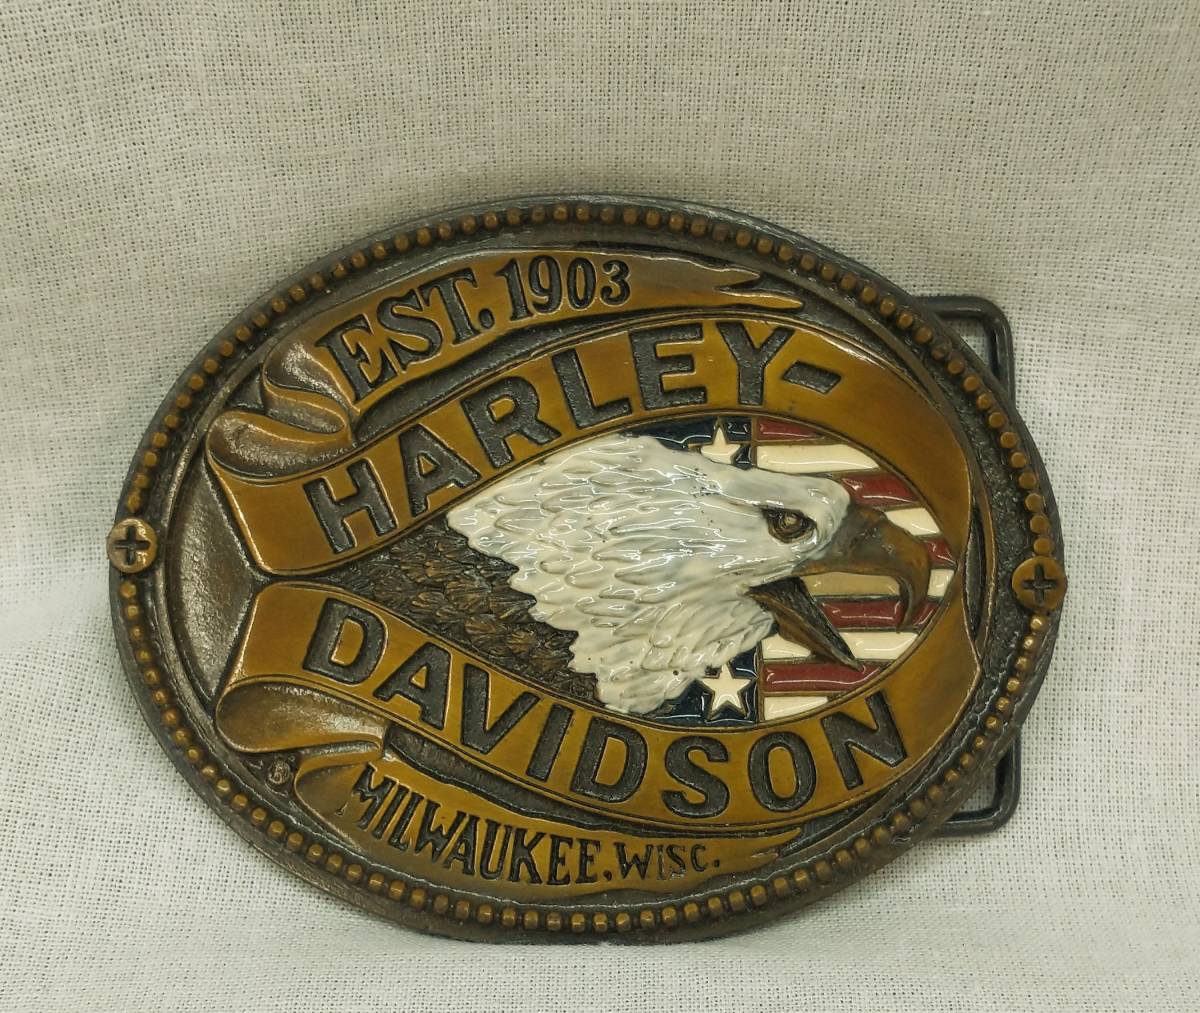 HARLEY-DAVIDSON ハーレーダビットソン バックル 1903 ミルウォーキー U.S.A ベルト アメリカン インテリア アメカジ 金属製_画像1